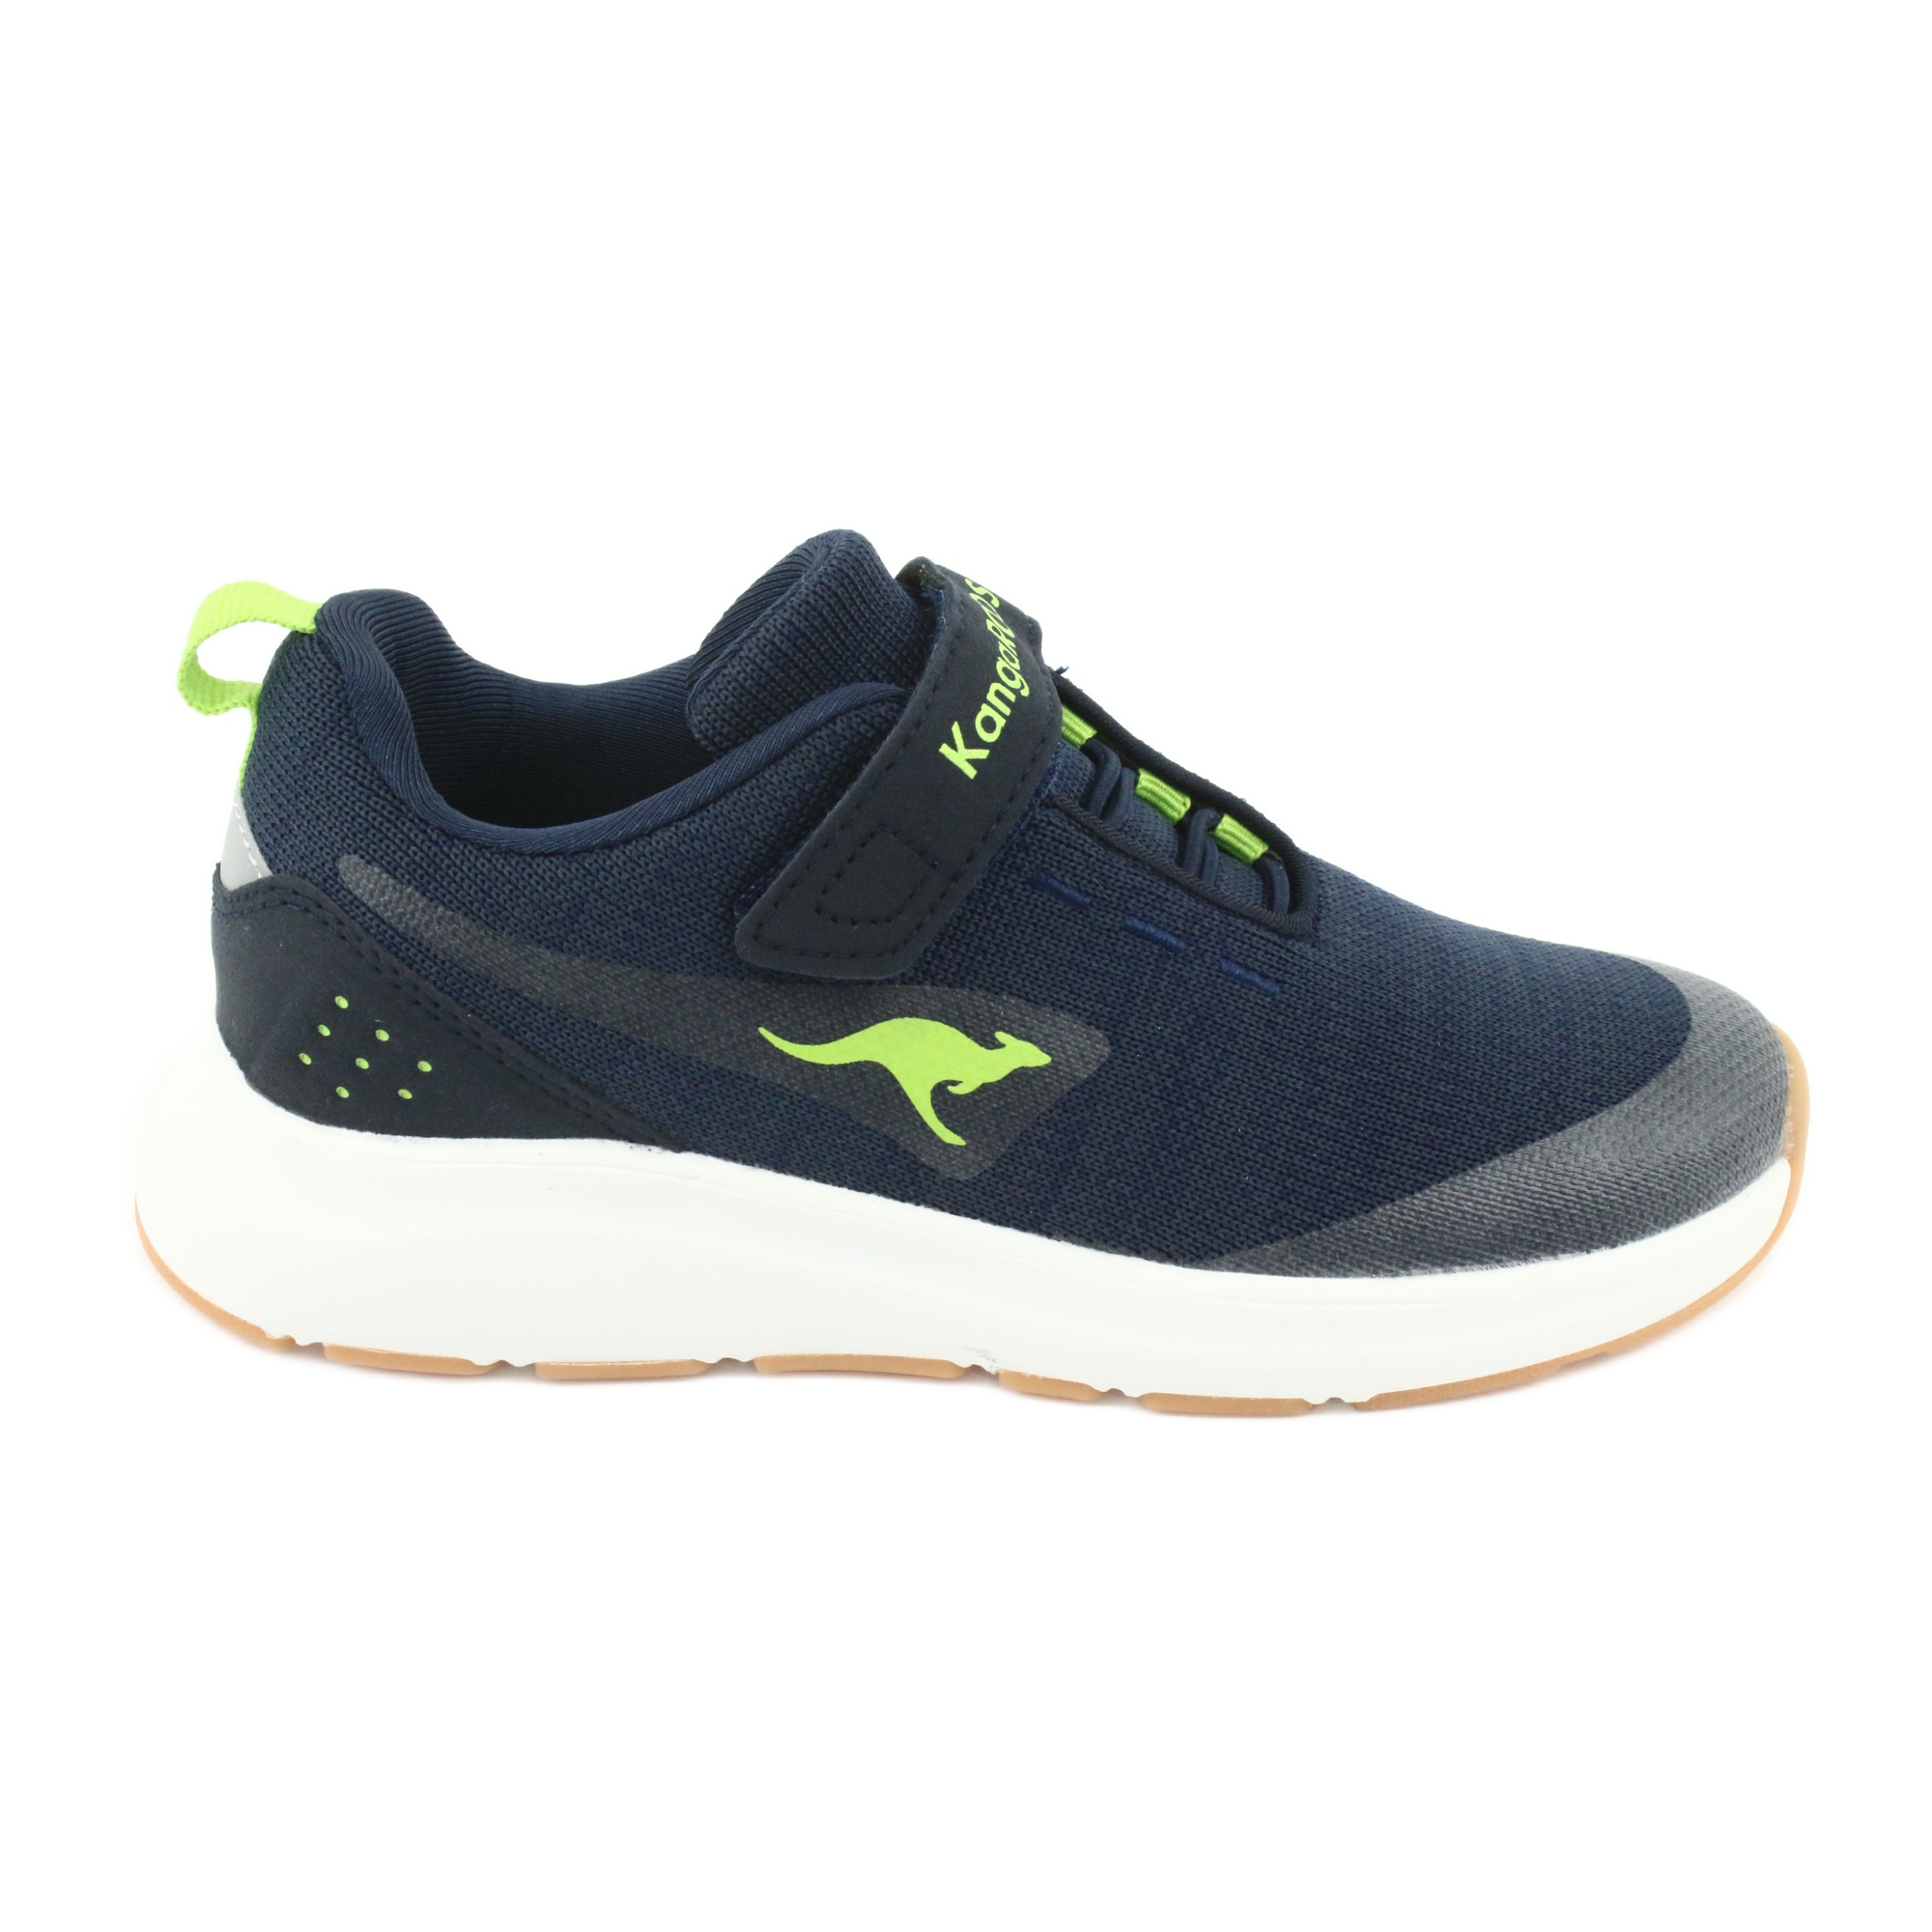 KangaROOS buty sportowe na rzepy 18508 navy/lime granatowe zielone